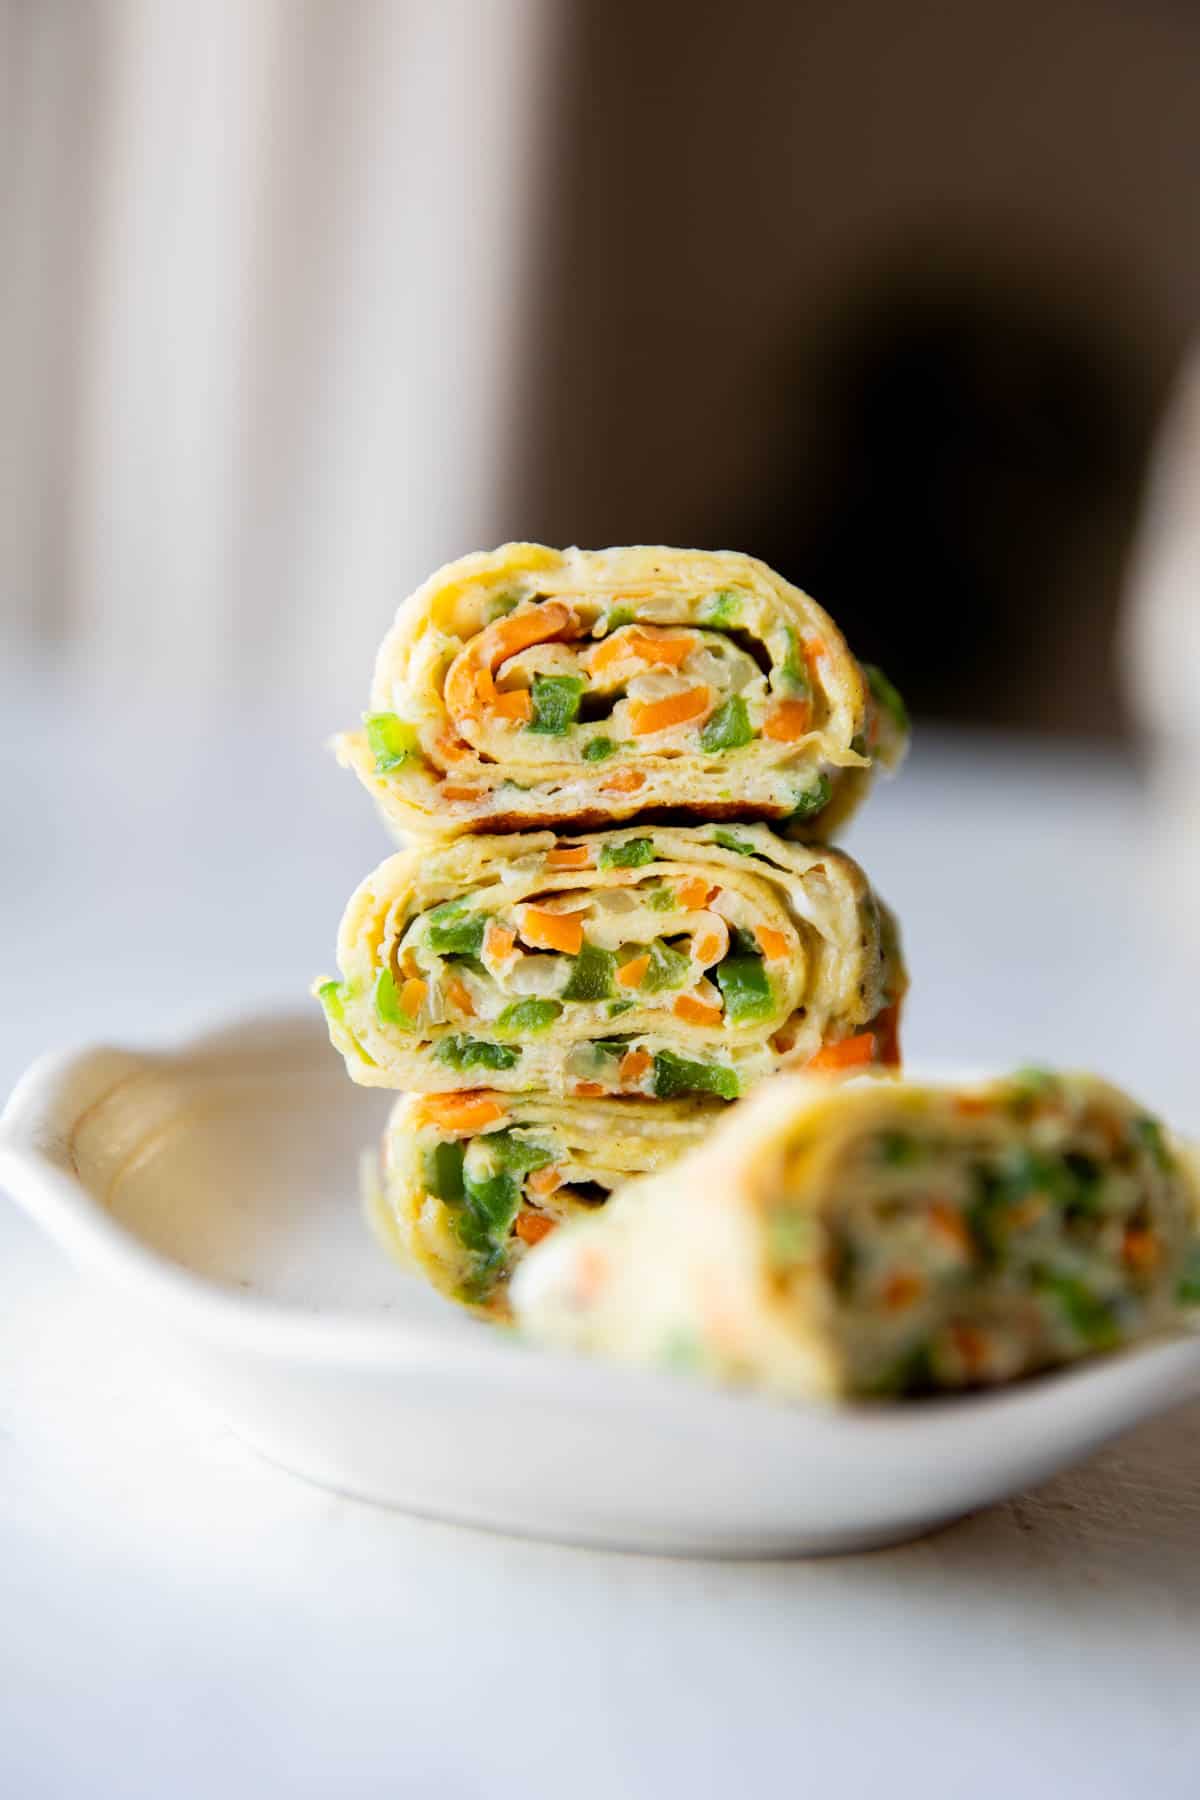 Korean Omelette Rolls - My Food Story